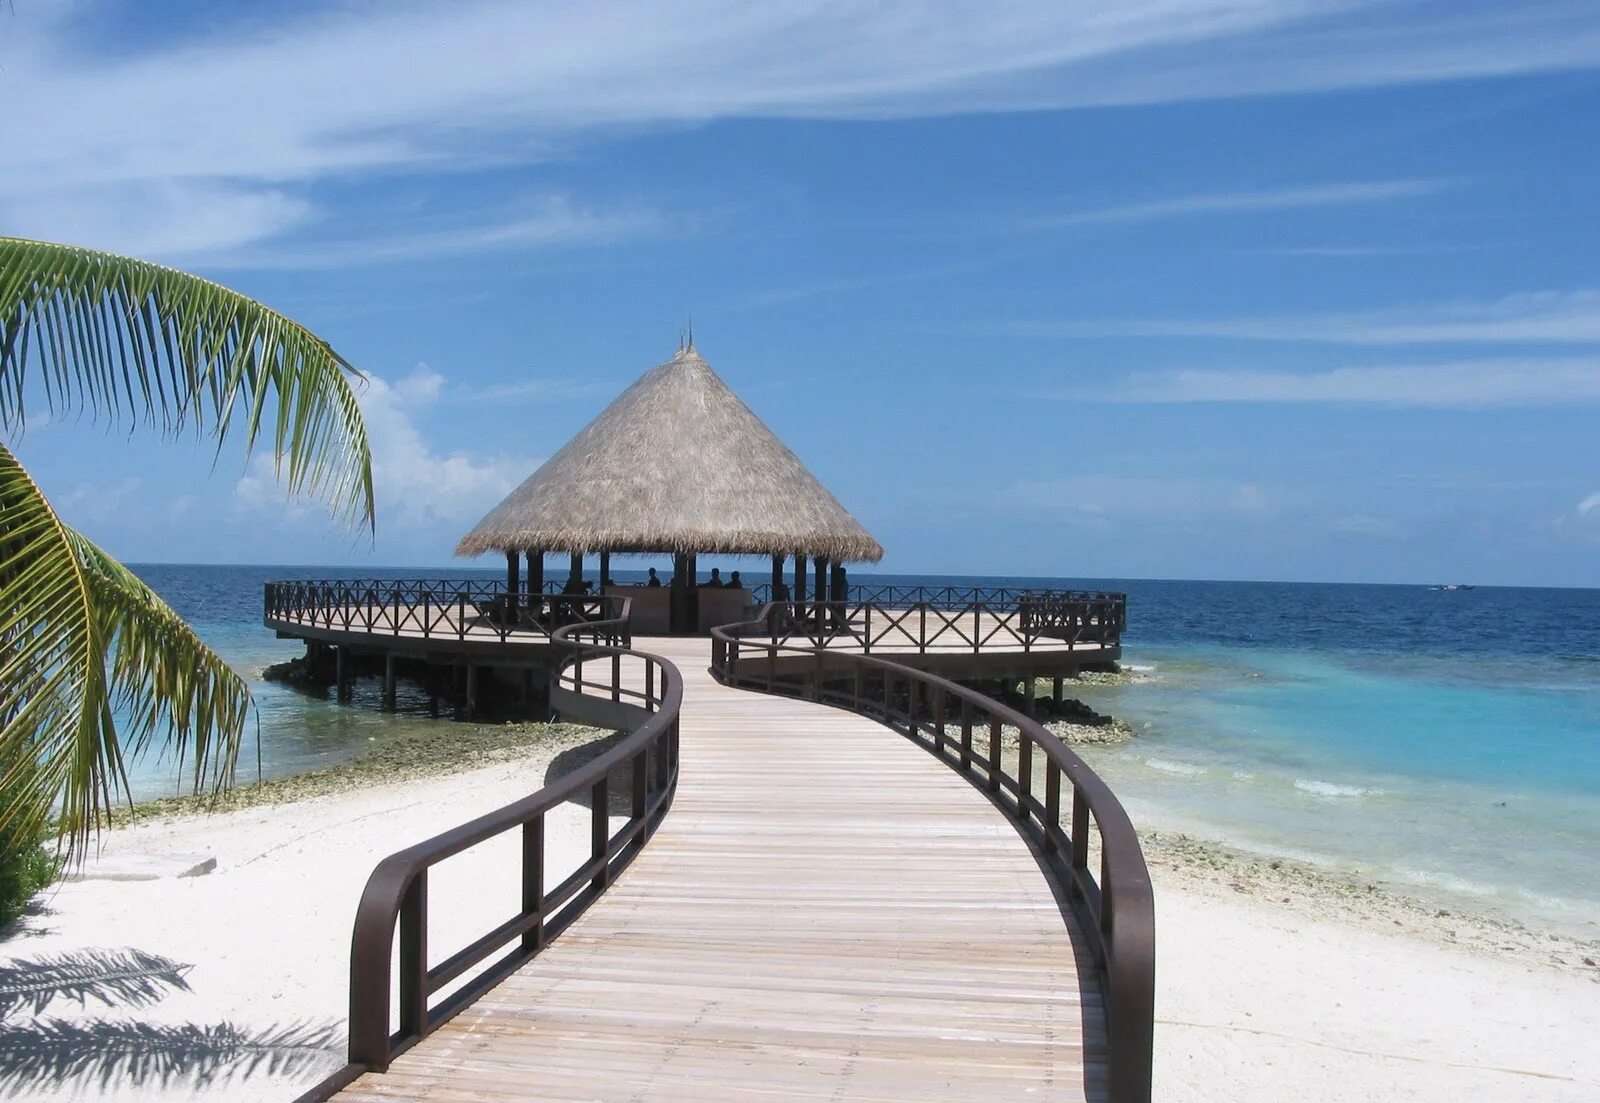 Bandos Maldives 4. Мальдивы Bandos. Bandos Island Resort 4*. Bandos Island Resort & Spa. Bandos island resort